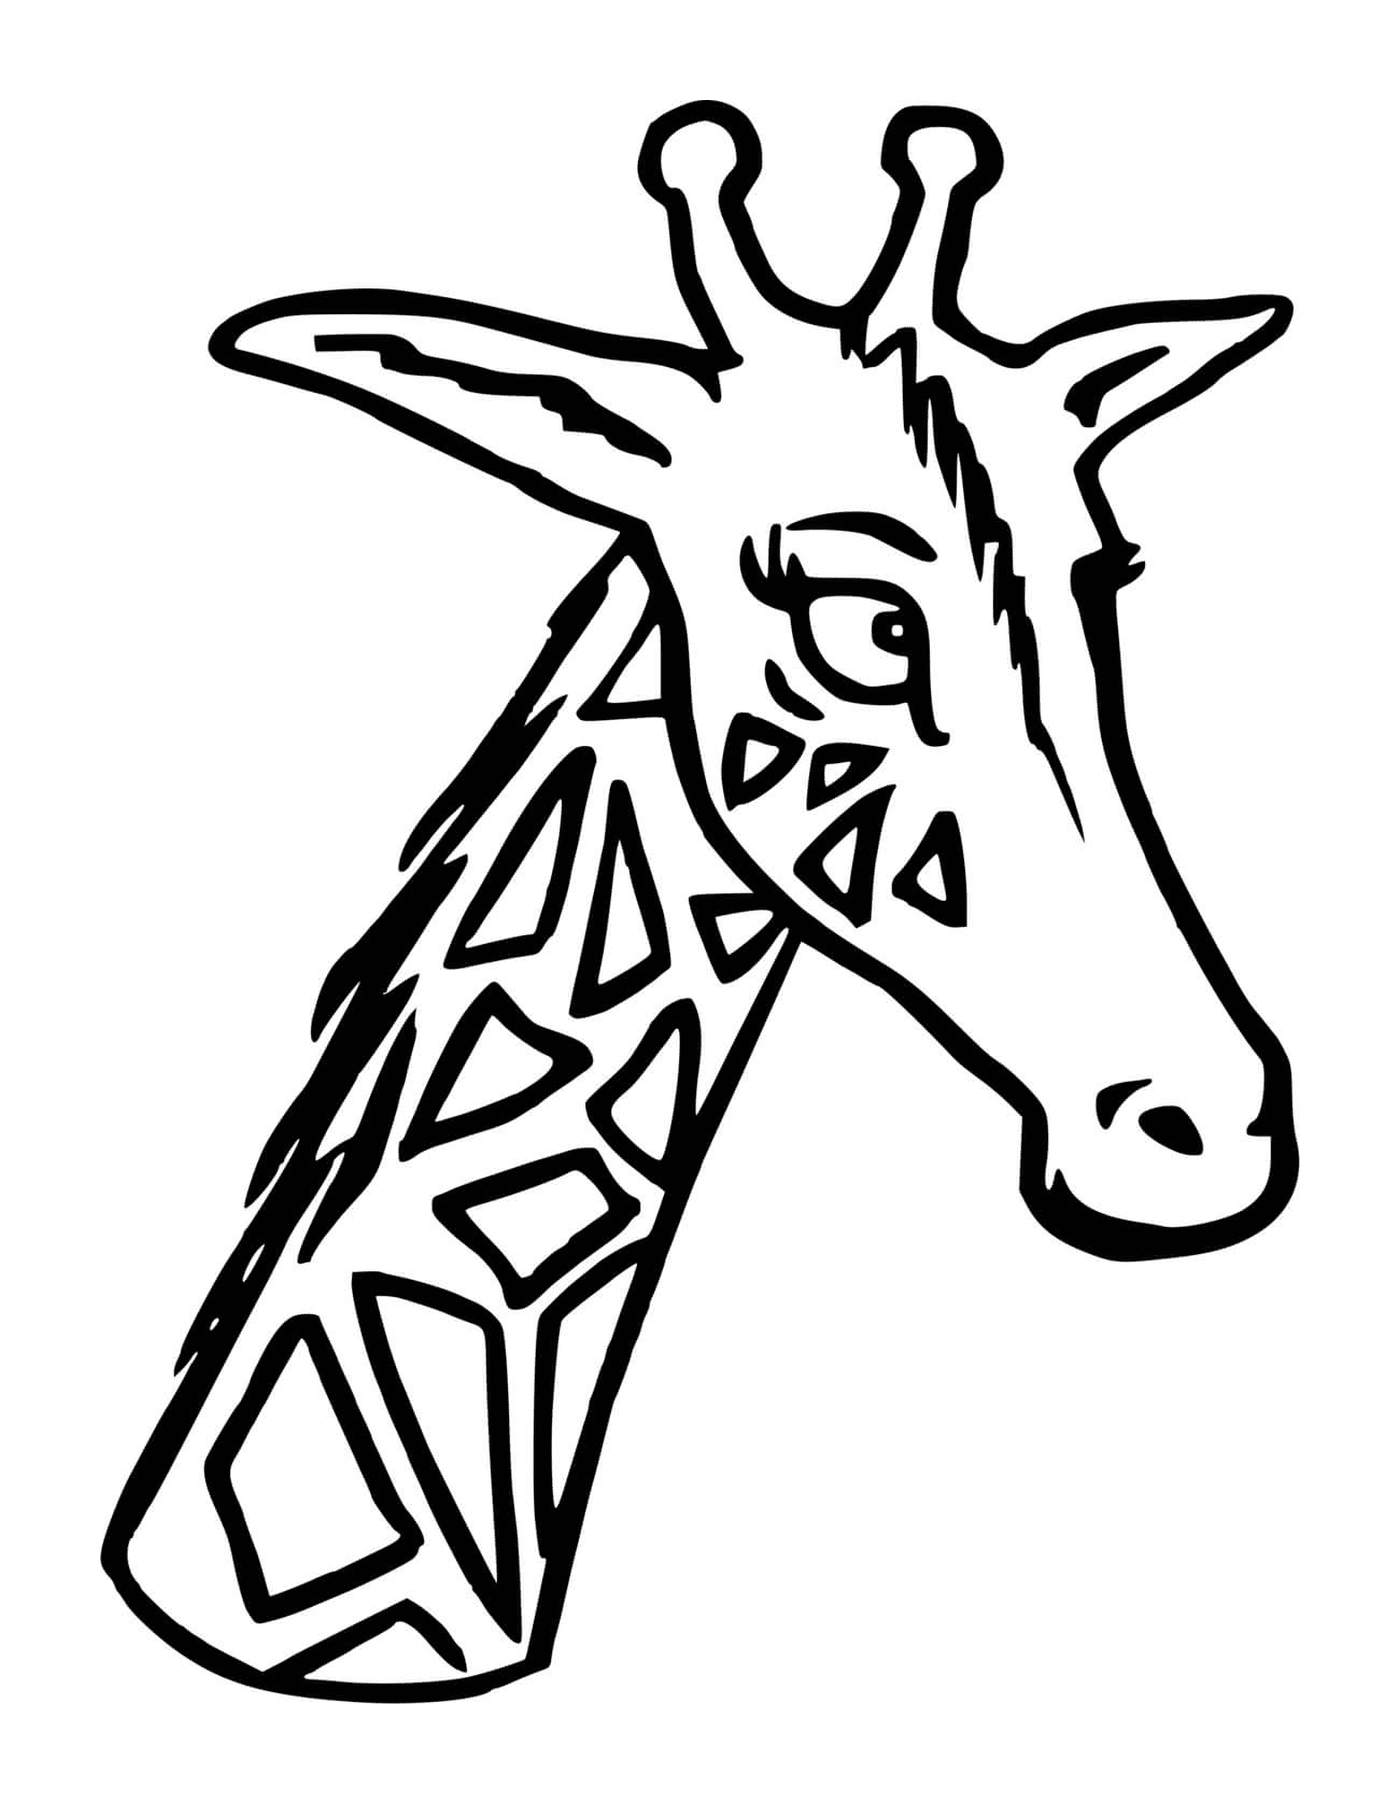  Una giraffa con la testa e il collo lunghi 